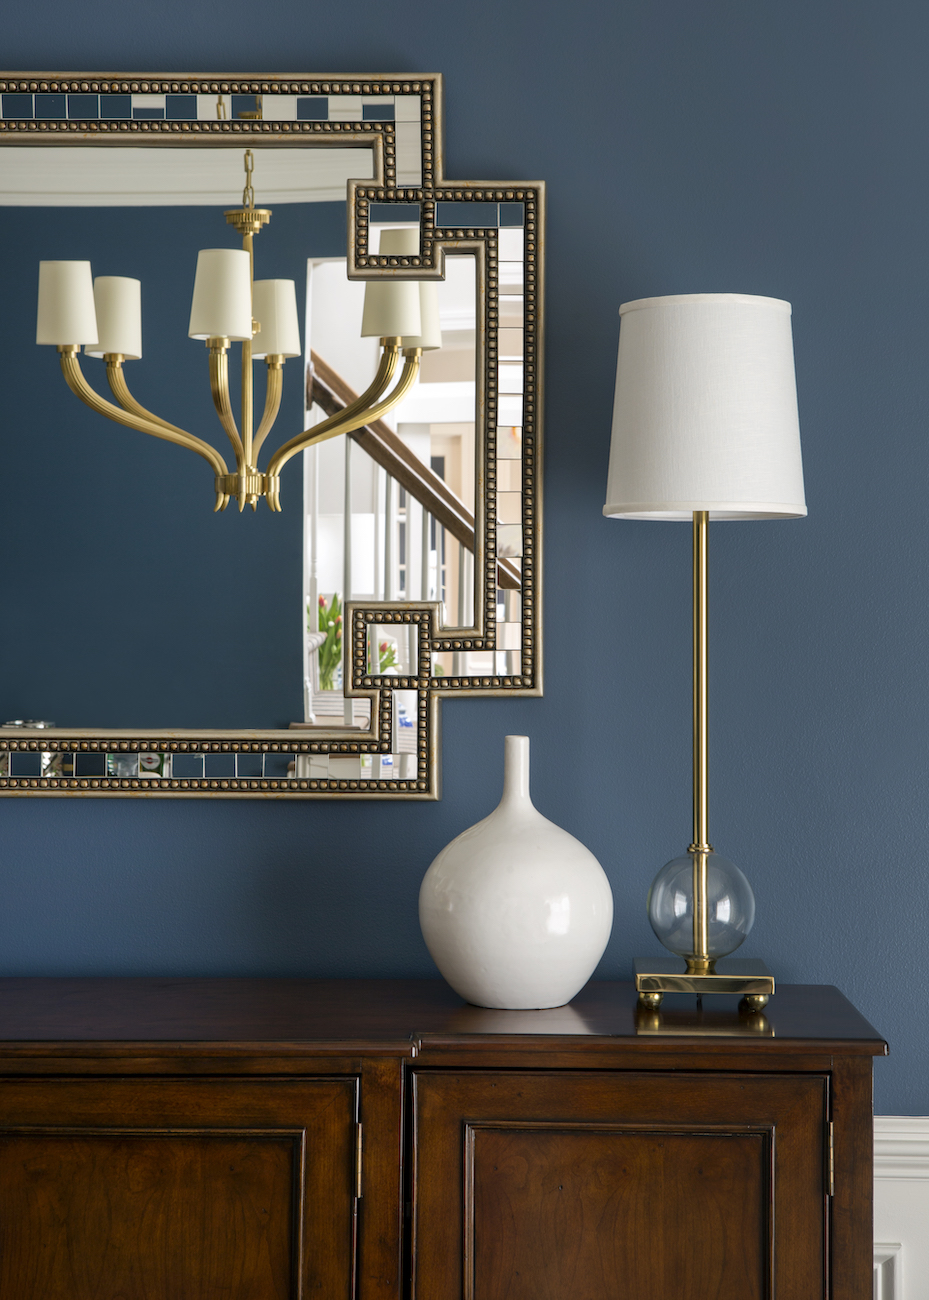 lamp-vase-mirror-dining-room-interior-design